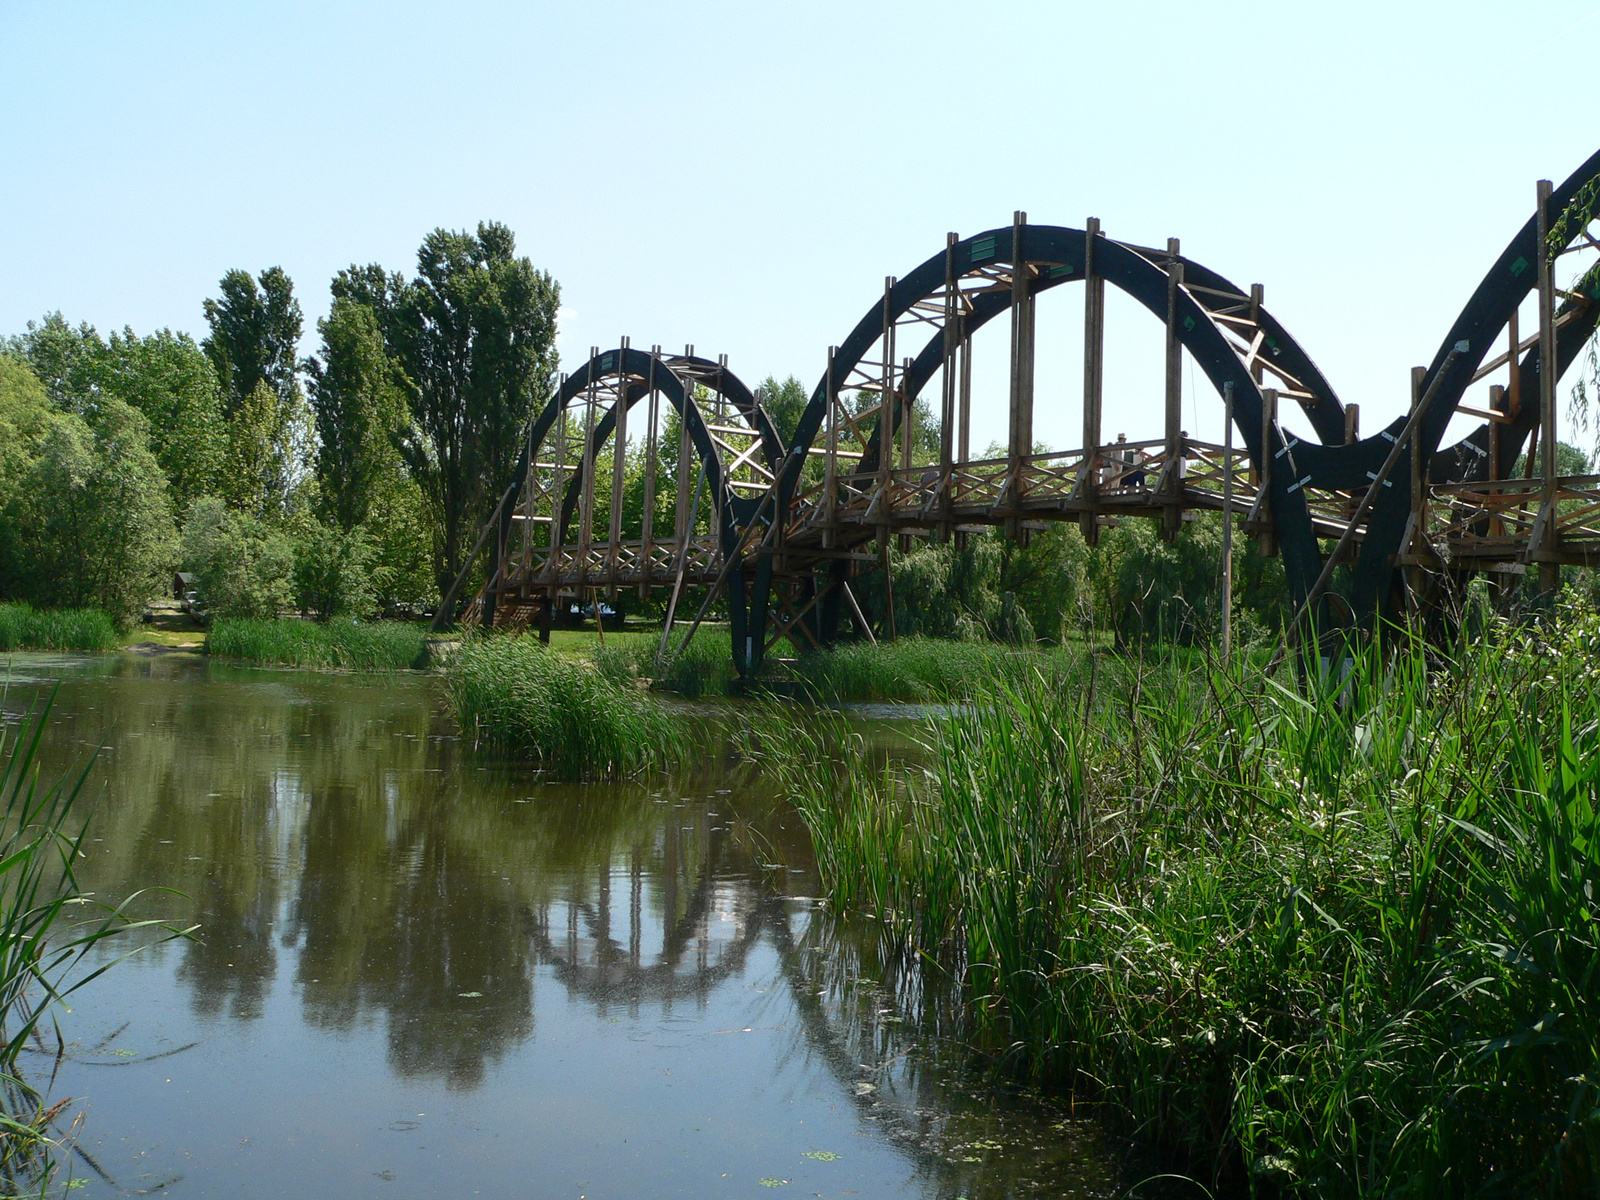 Klassz panorámafotót készíthetünk a Kis-Balaton élővilágáról a gyalogos hídon állva